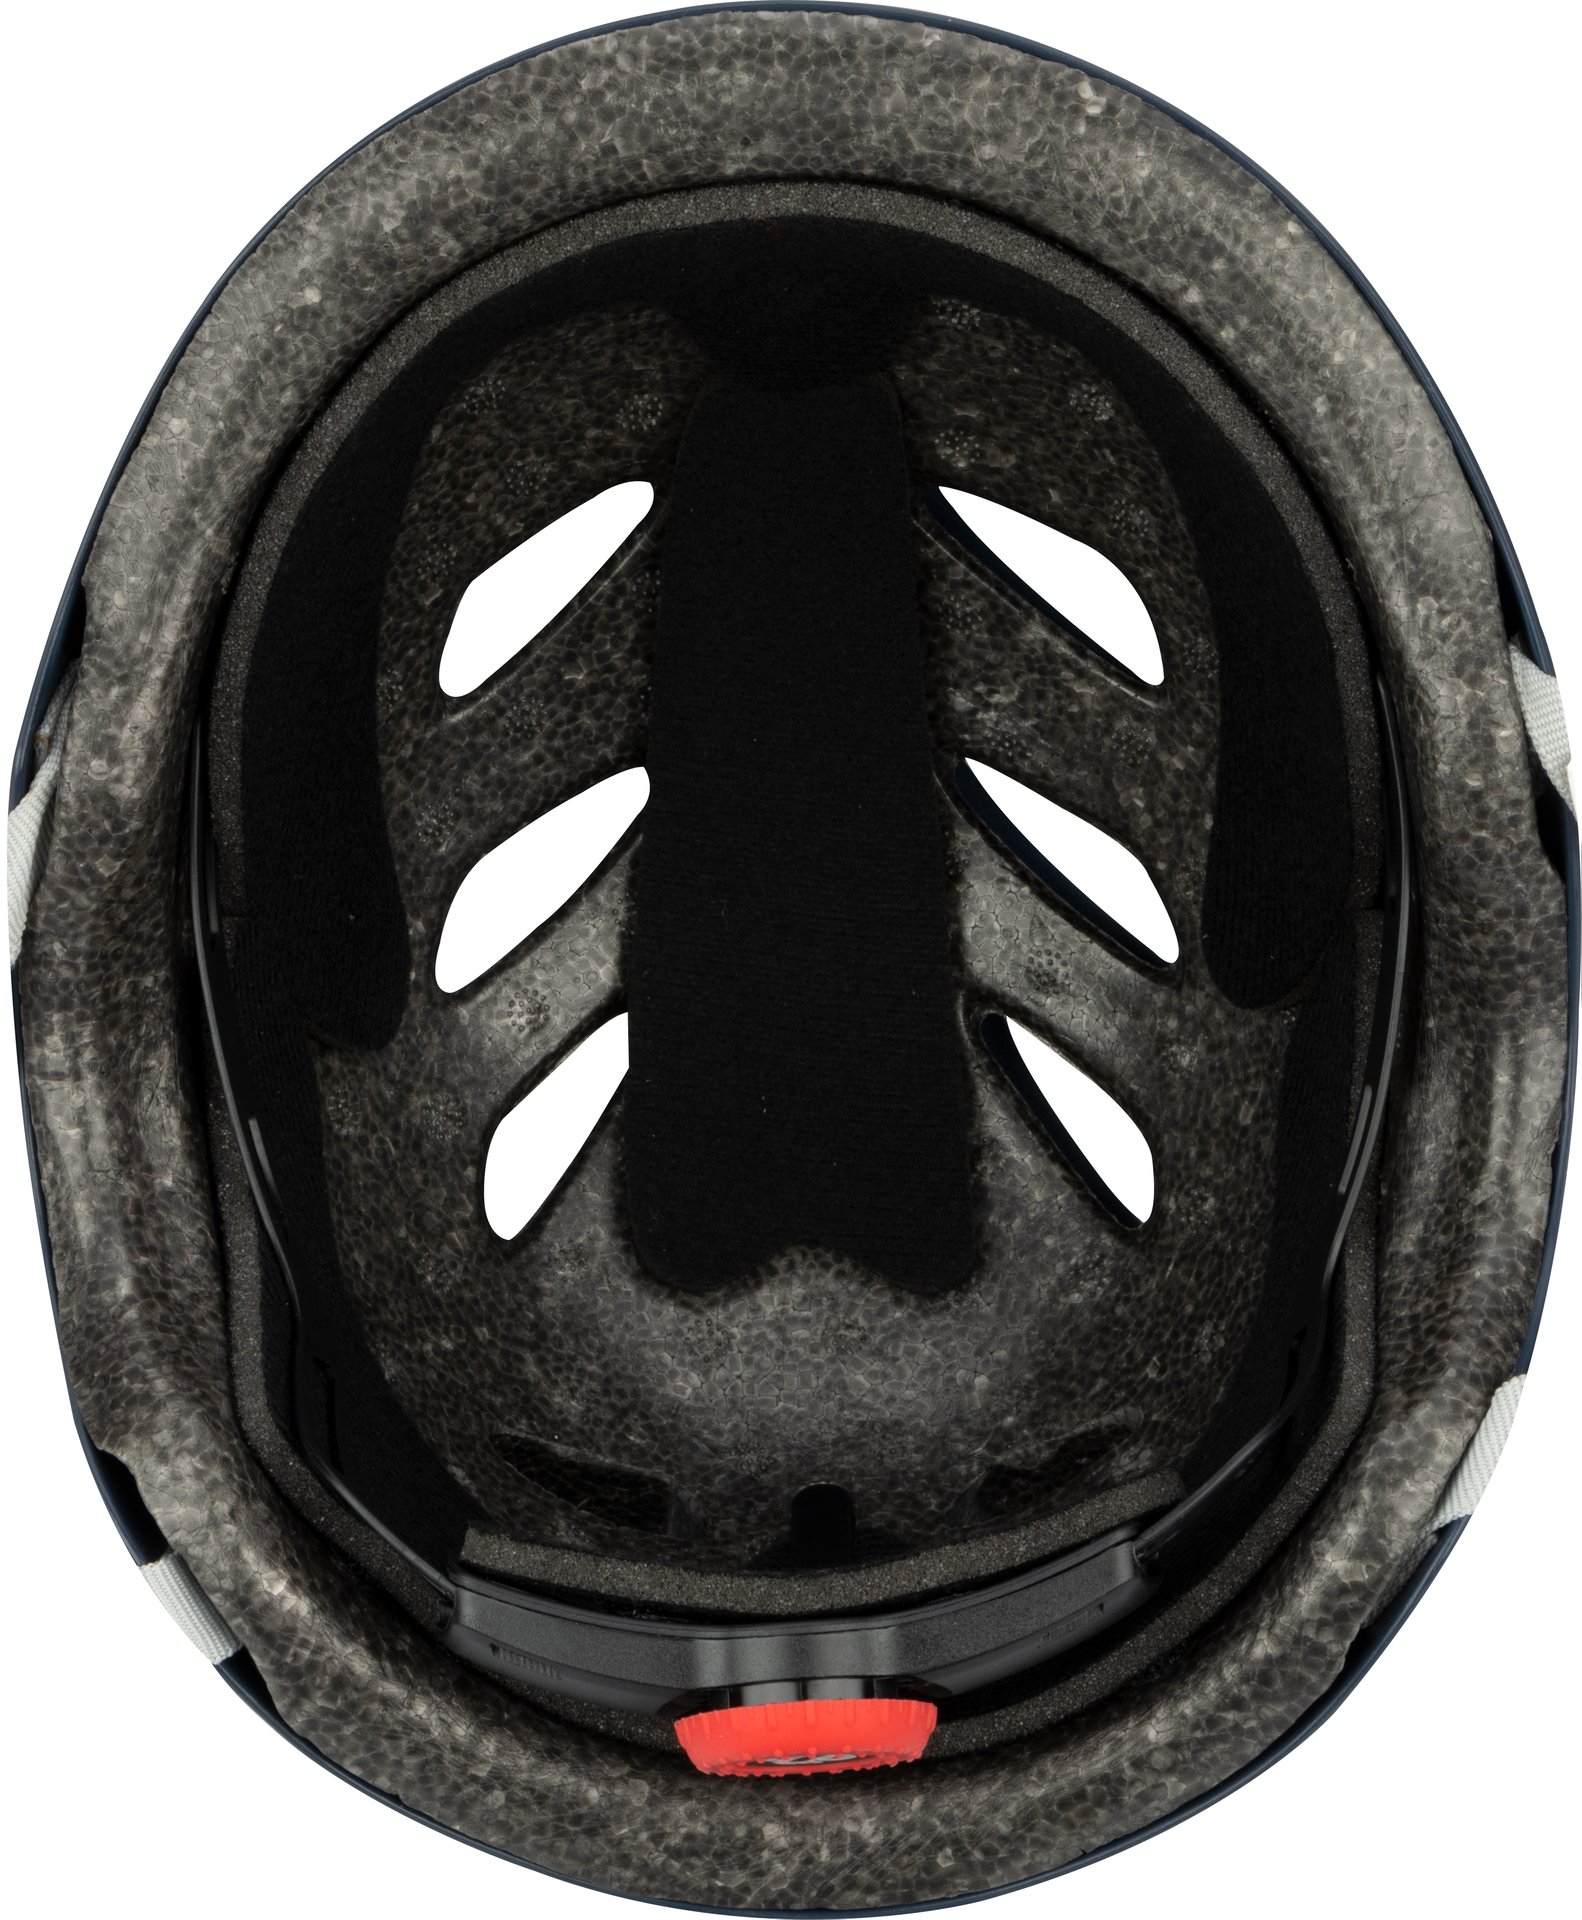 Skate Helm - Sidewalk Sentinel